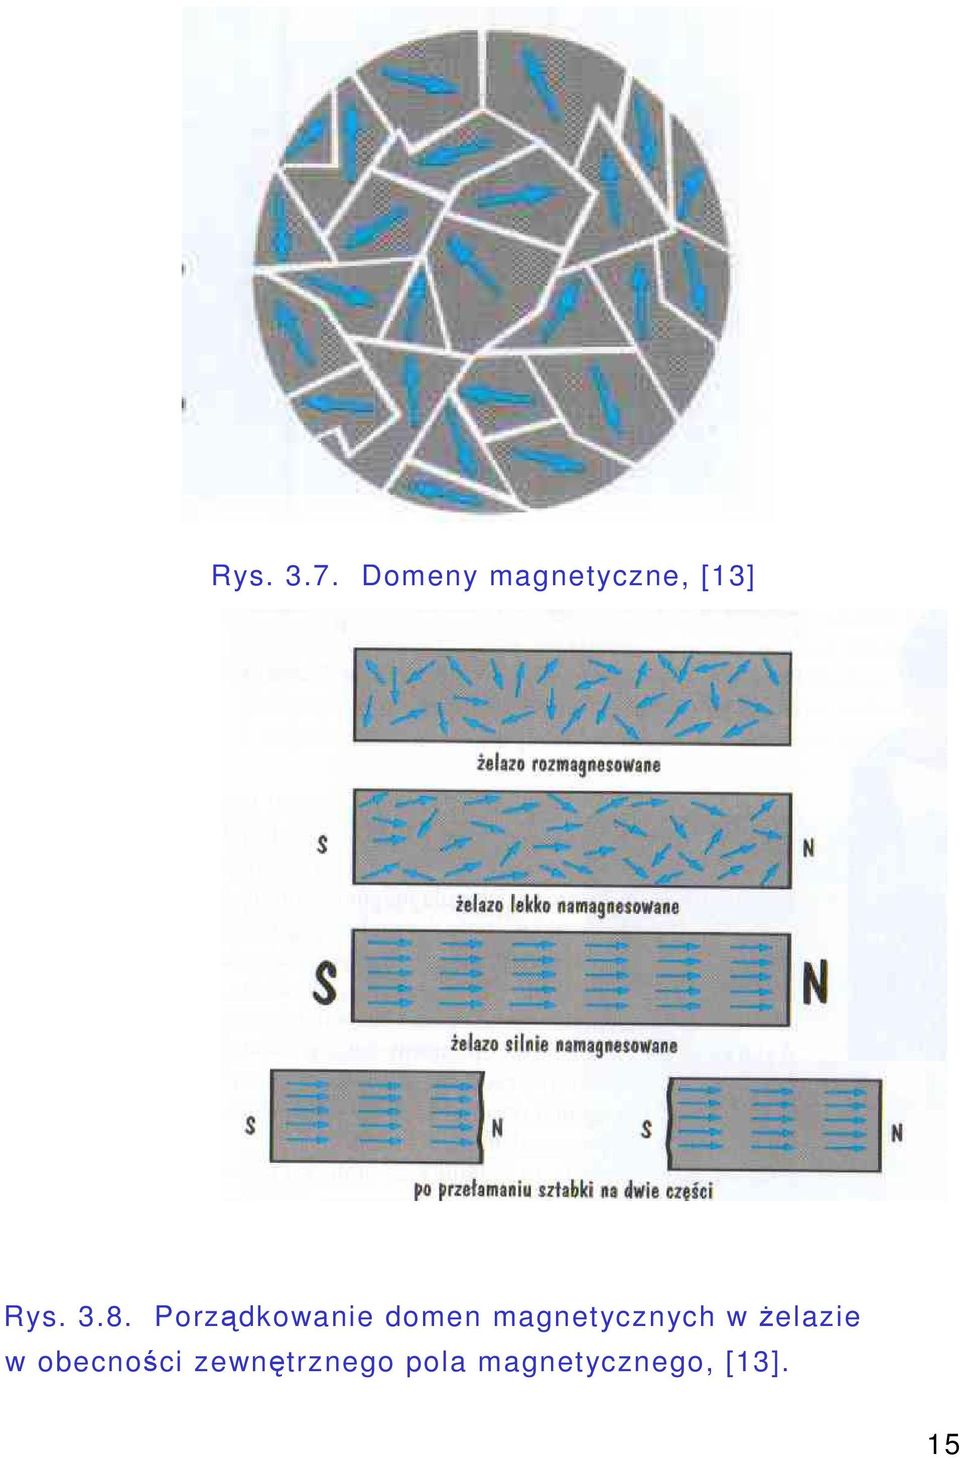 Porzdkowanie domen magnetycznych w